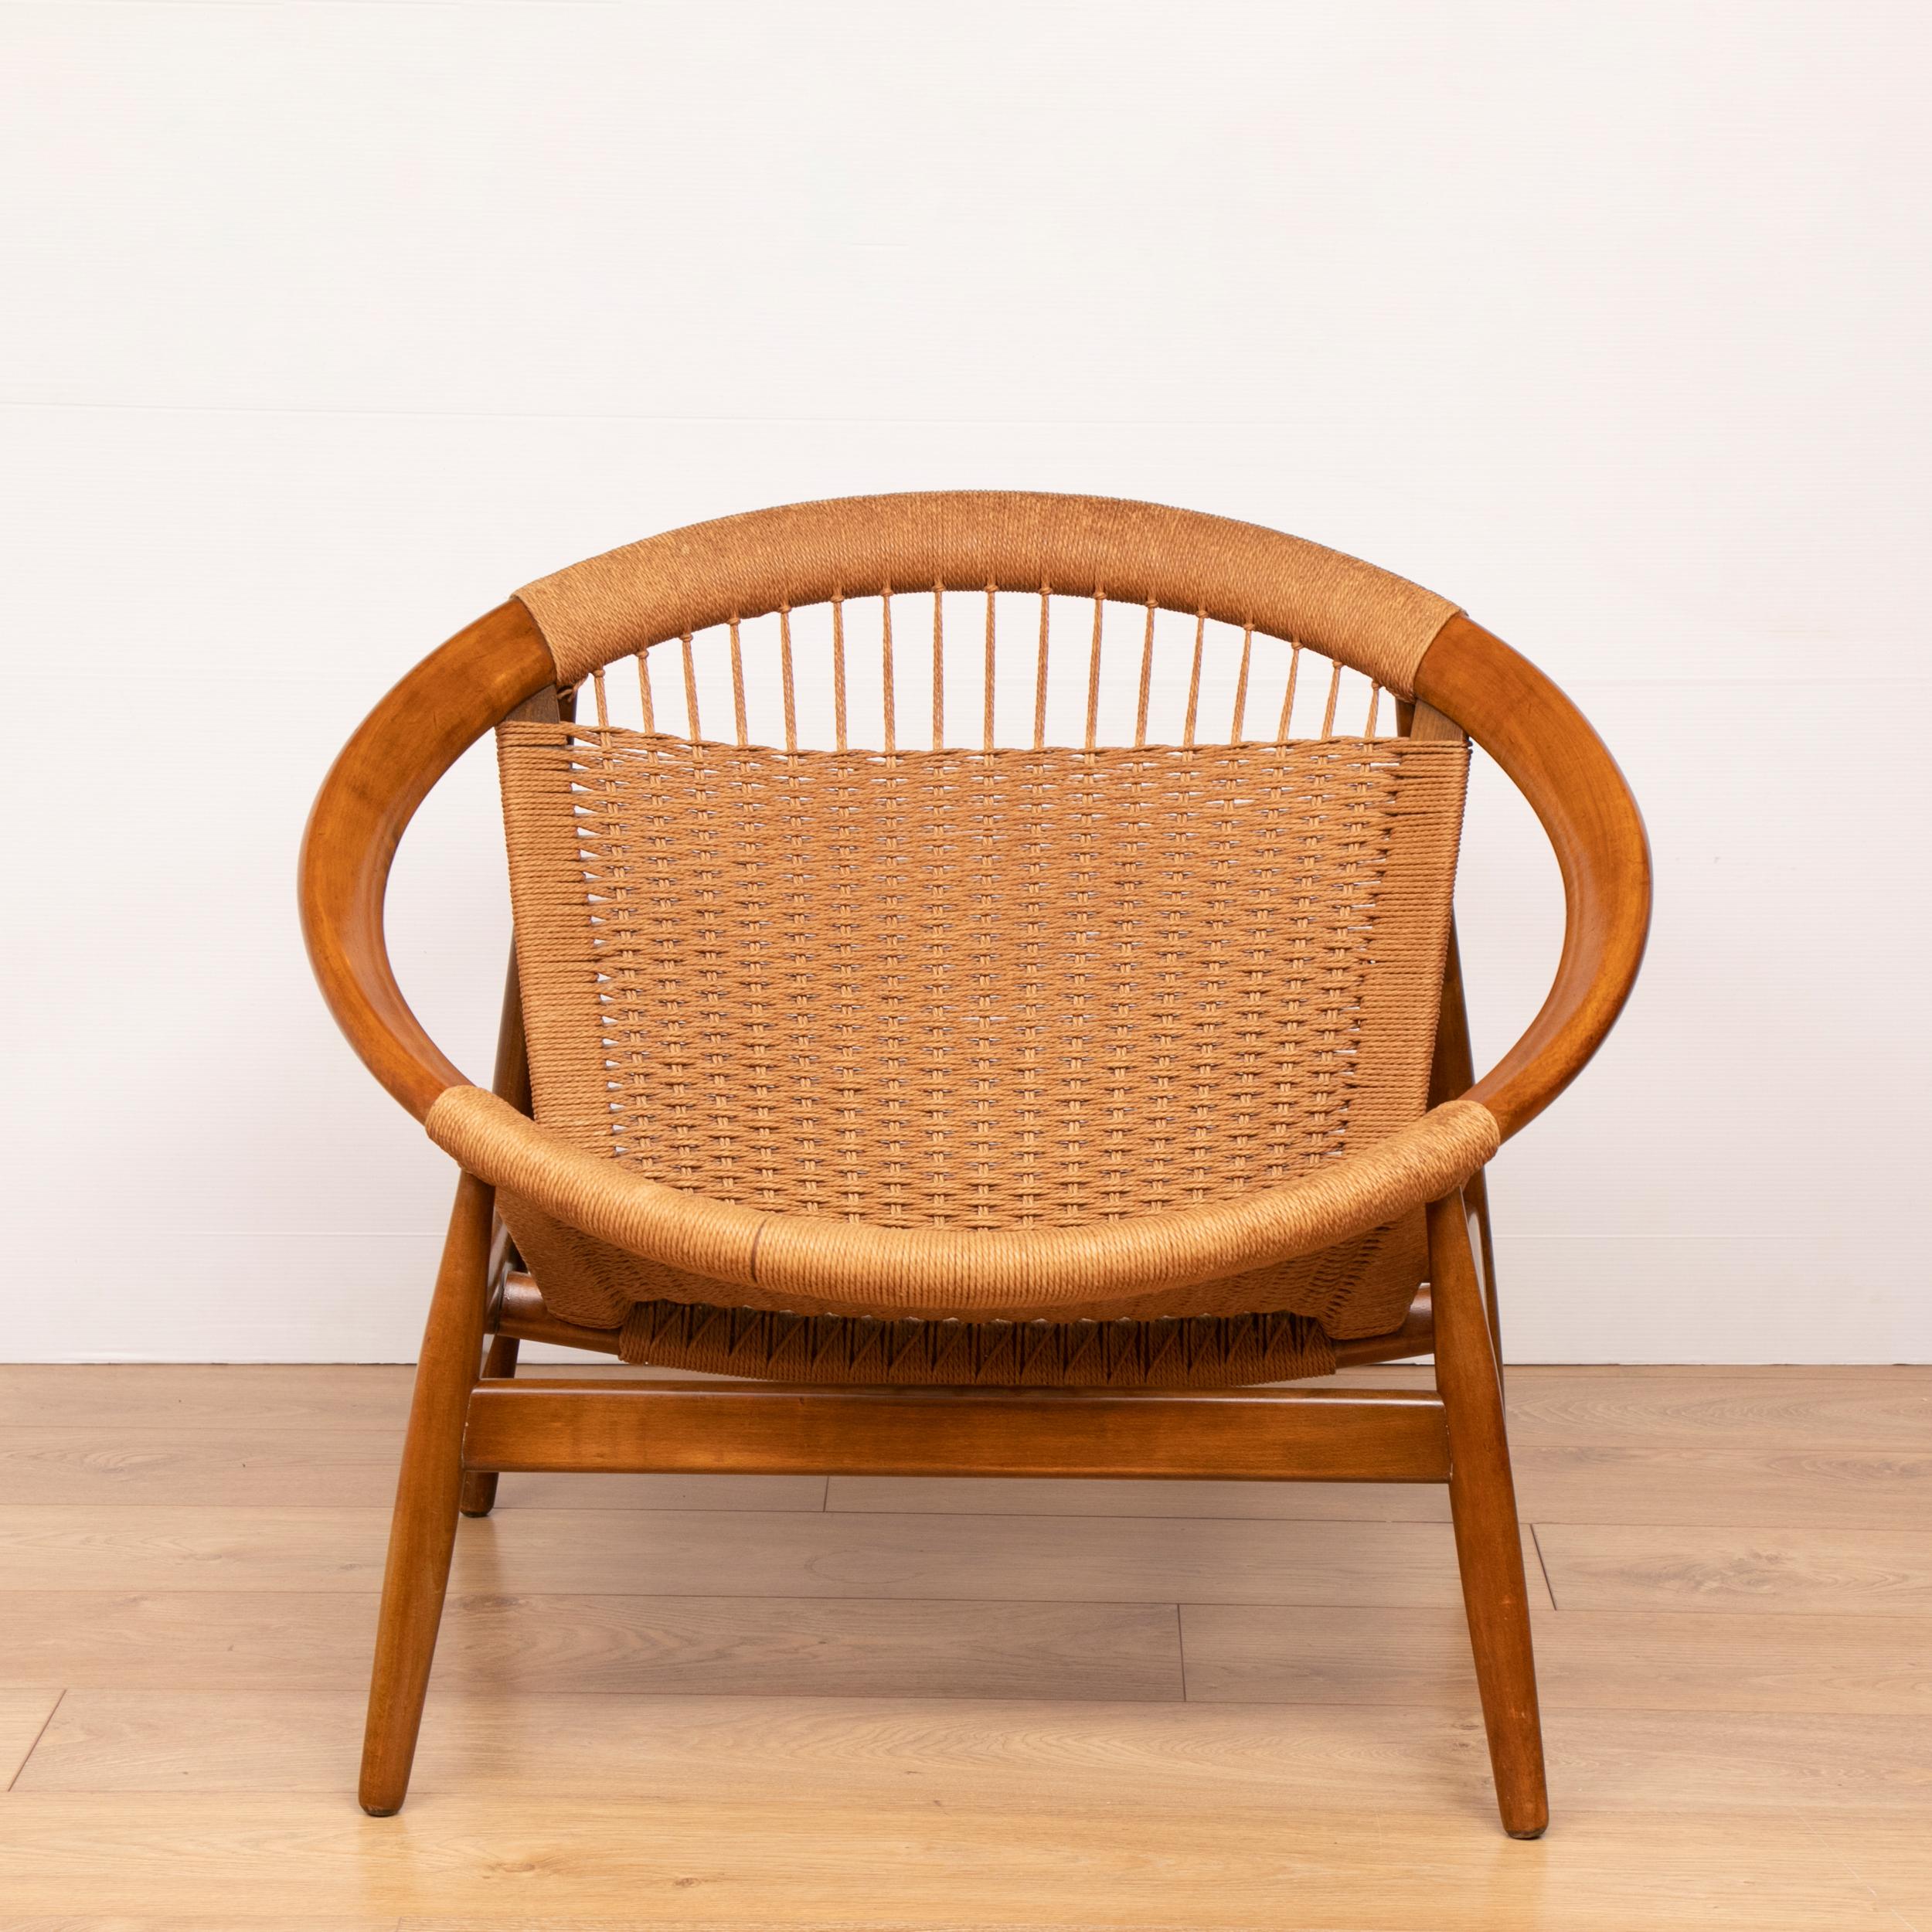 Illum wikkelso ringstol teak and woven cord model 23 chair.